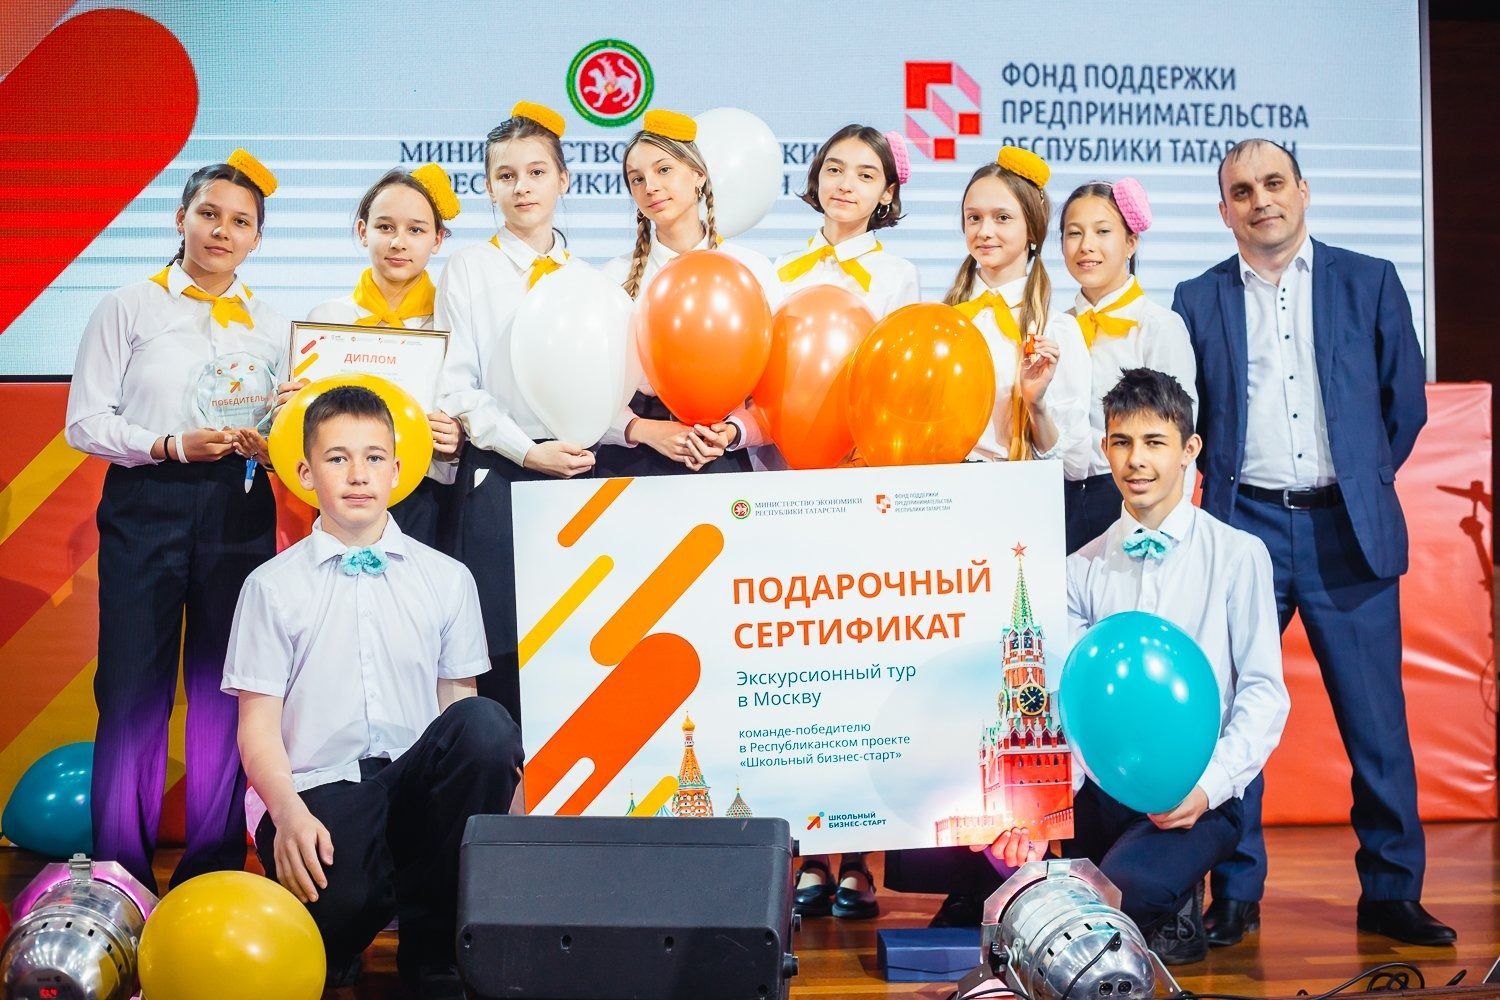 В Татарстане определены победители проекта «Школьный бизнес старт»